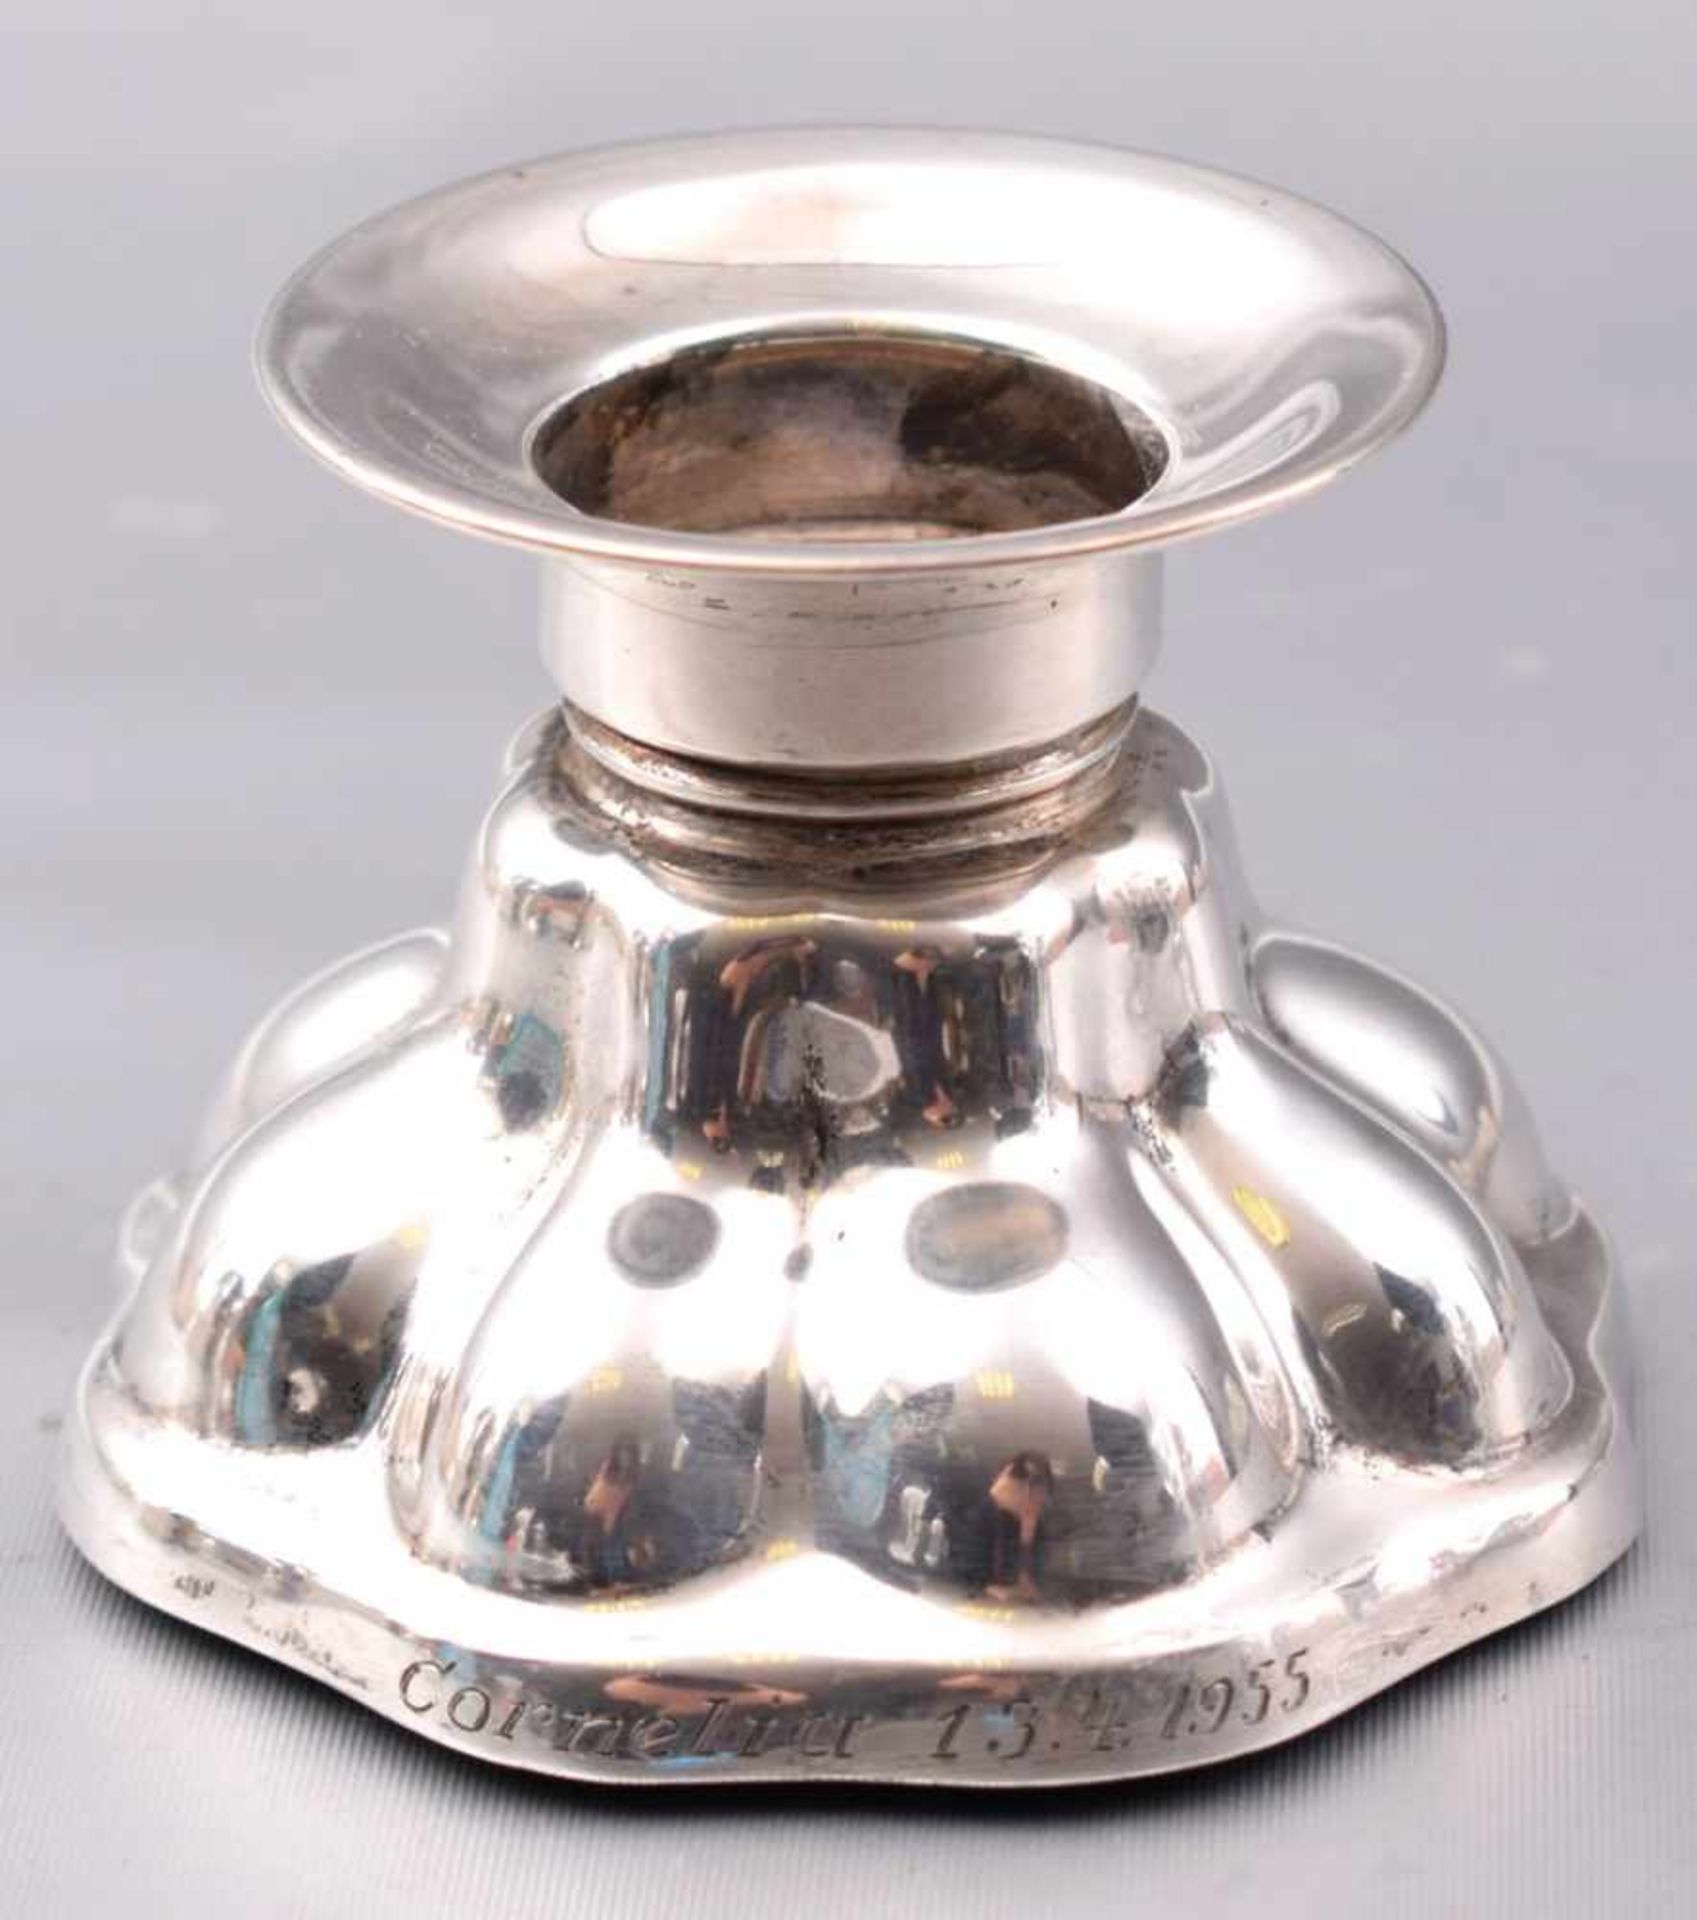 Tischkerzenleuchter 1-lichtig, rund, dat. 13.4.55, H 5,5 cm, deutsch, 835er Silber